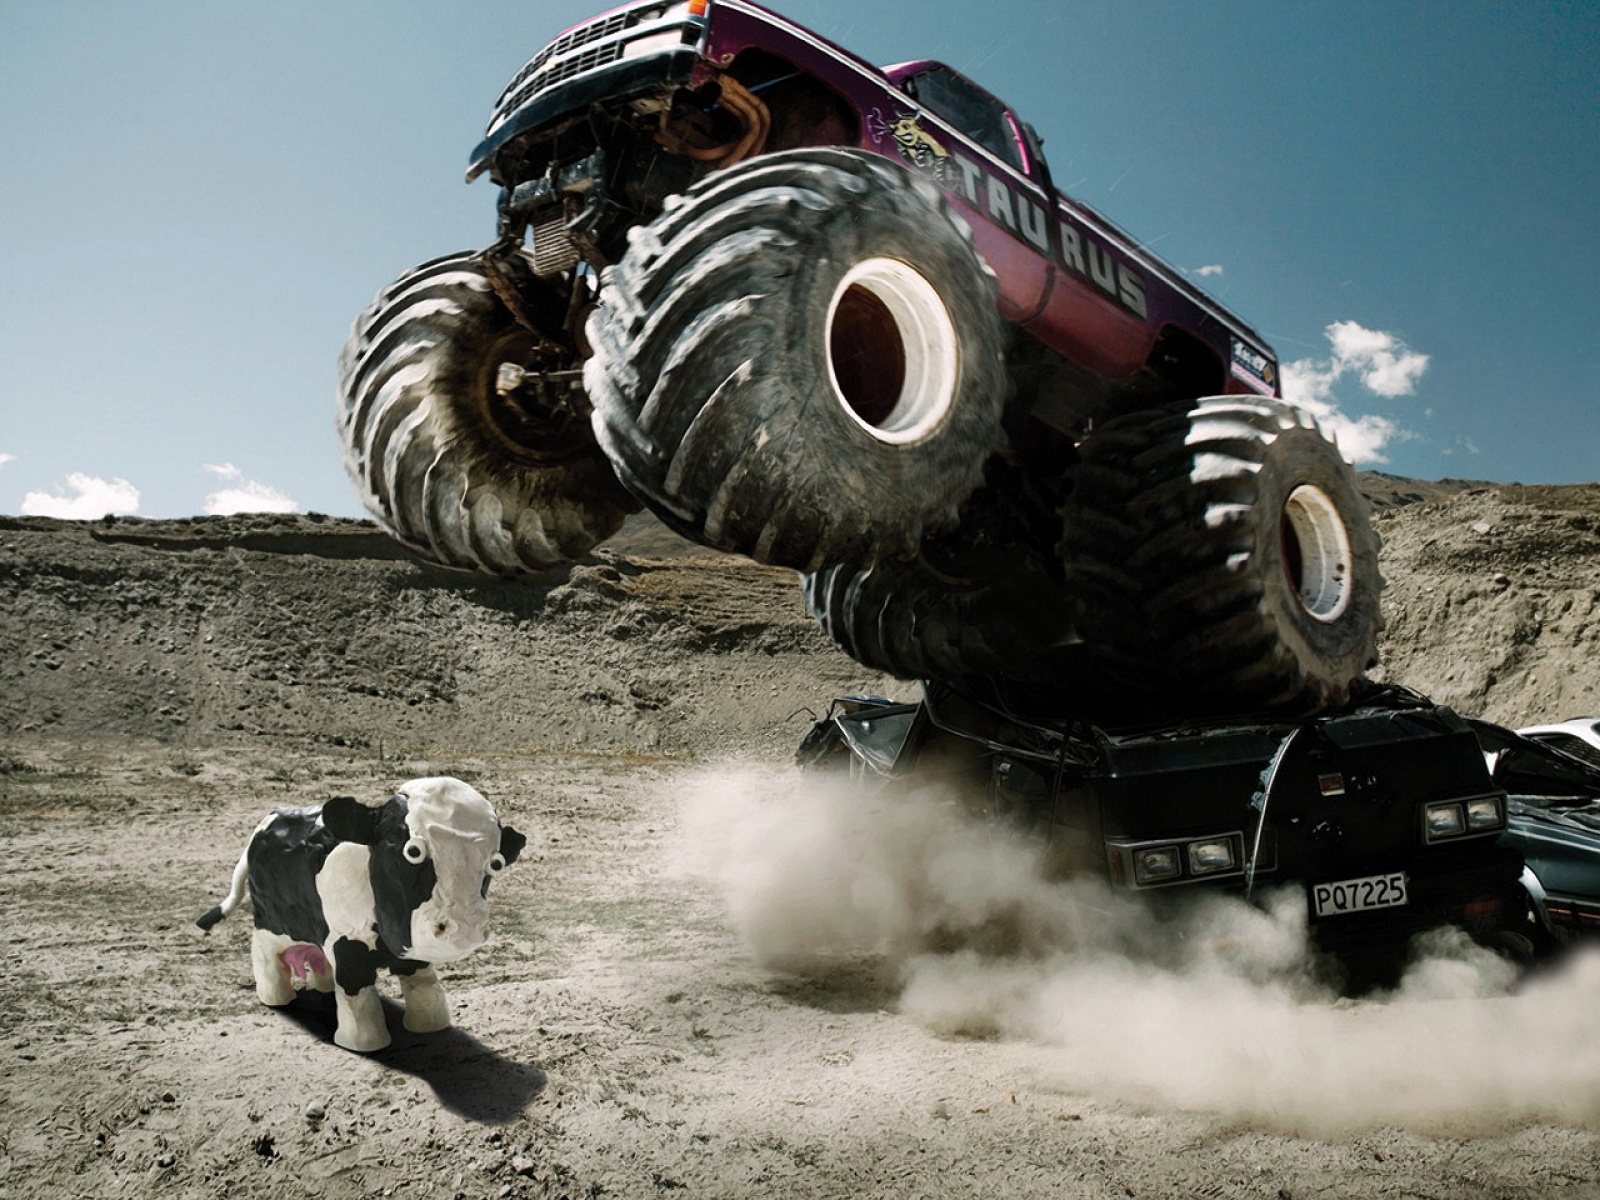 Fond d'ecran Monster truck face  une vache